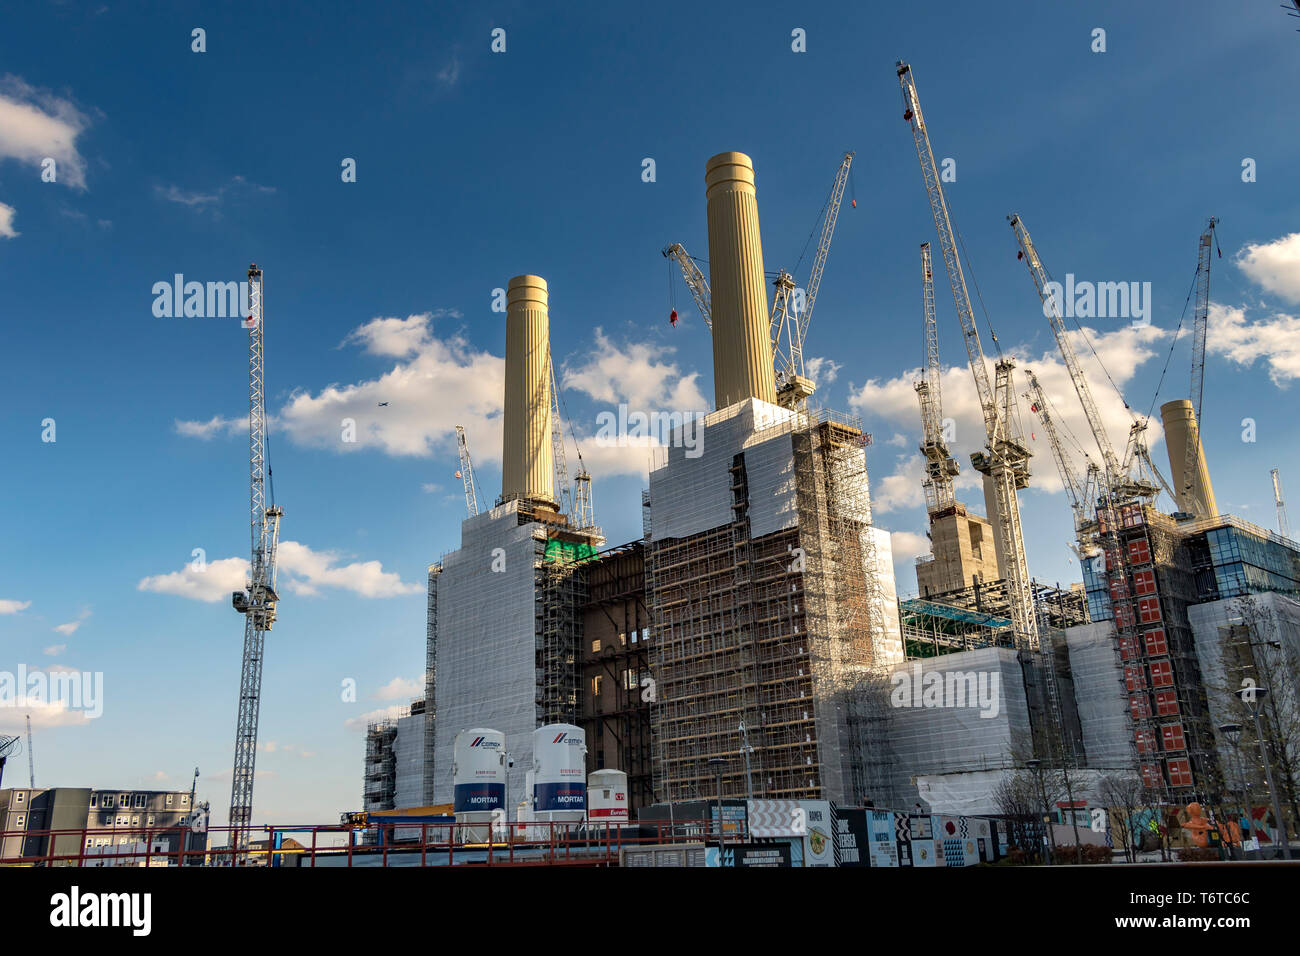 Travaux de construction importants à la centrale électrique de Battersea dans le cadre d'un projet de réaménagement de plusieurs milliards de livres à Battersea , Londres, Royaume-Uni Banque D'Images